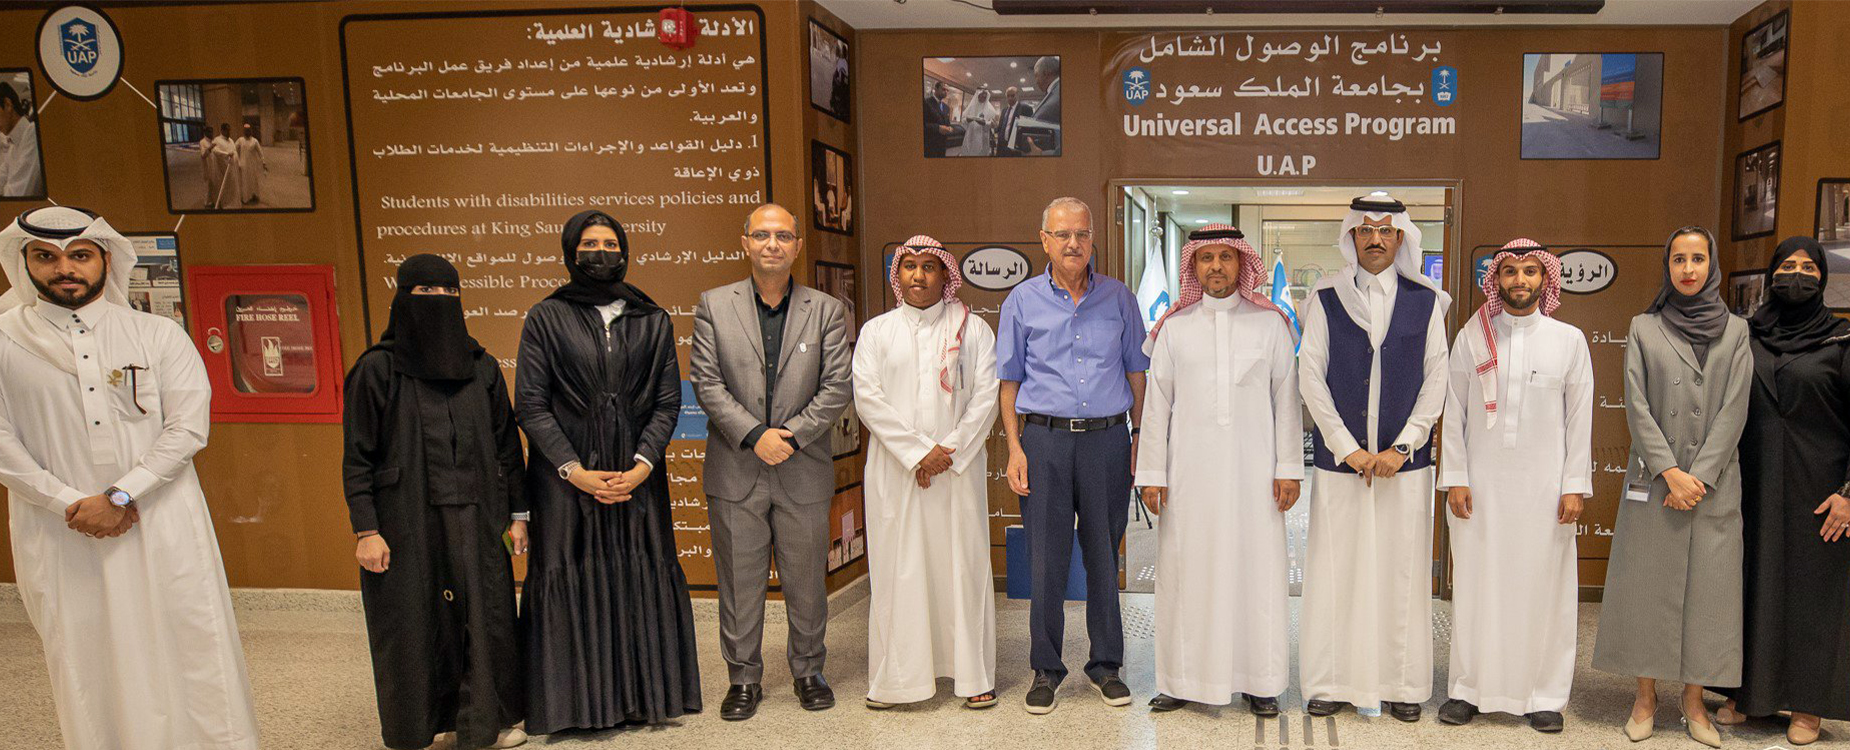 صورة جماعية مع نائب رئيس الجامعة للشؤون التعليمية والاكاديمية